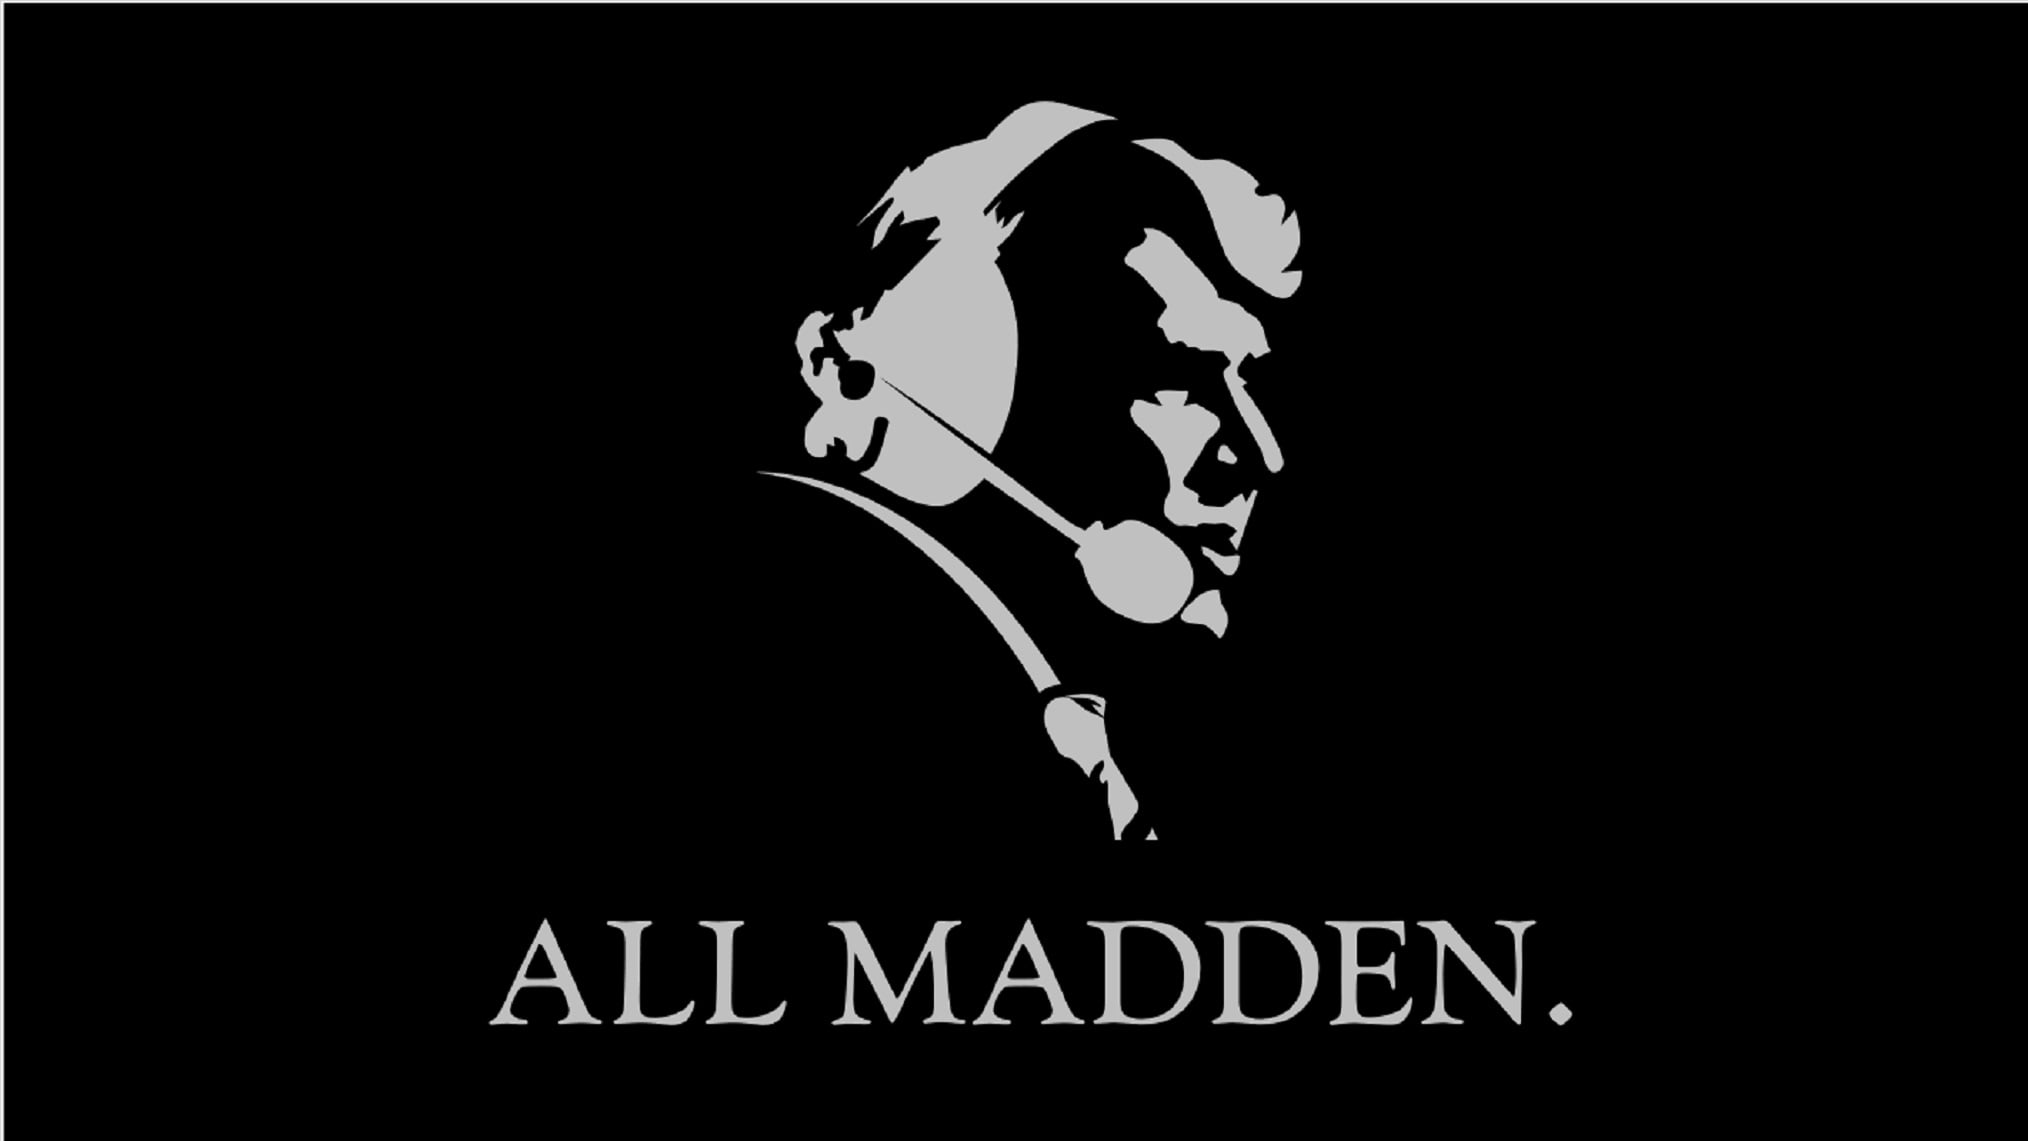 John Madden Documentary On Christmas Day